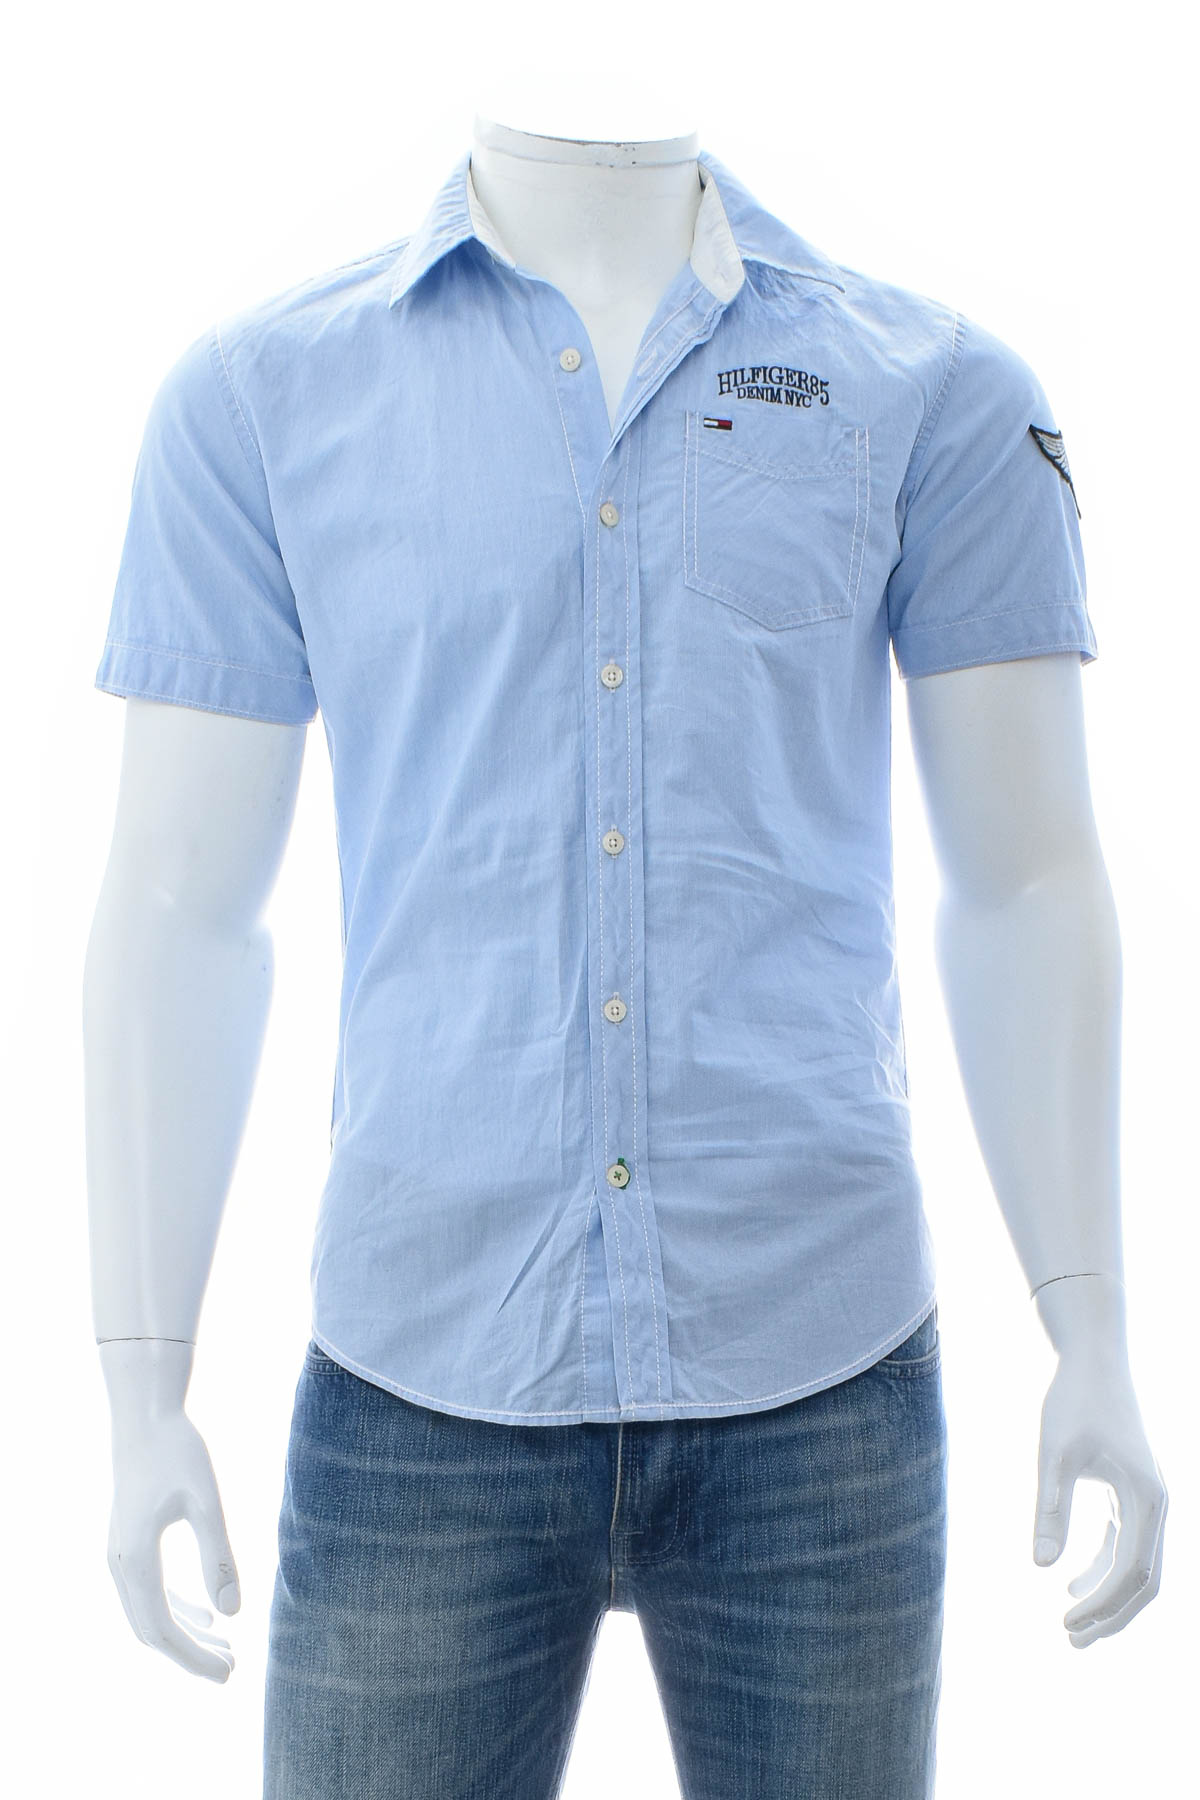 Ανδρικό πουκάμισο - HILFIGER DENIM - 0